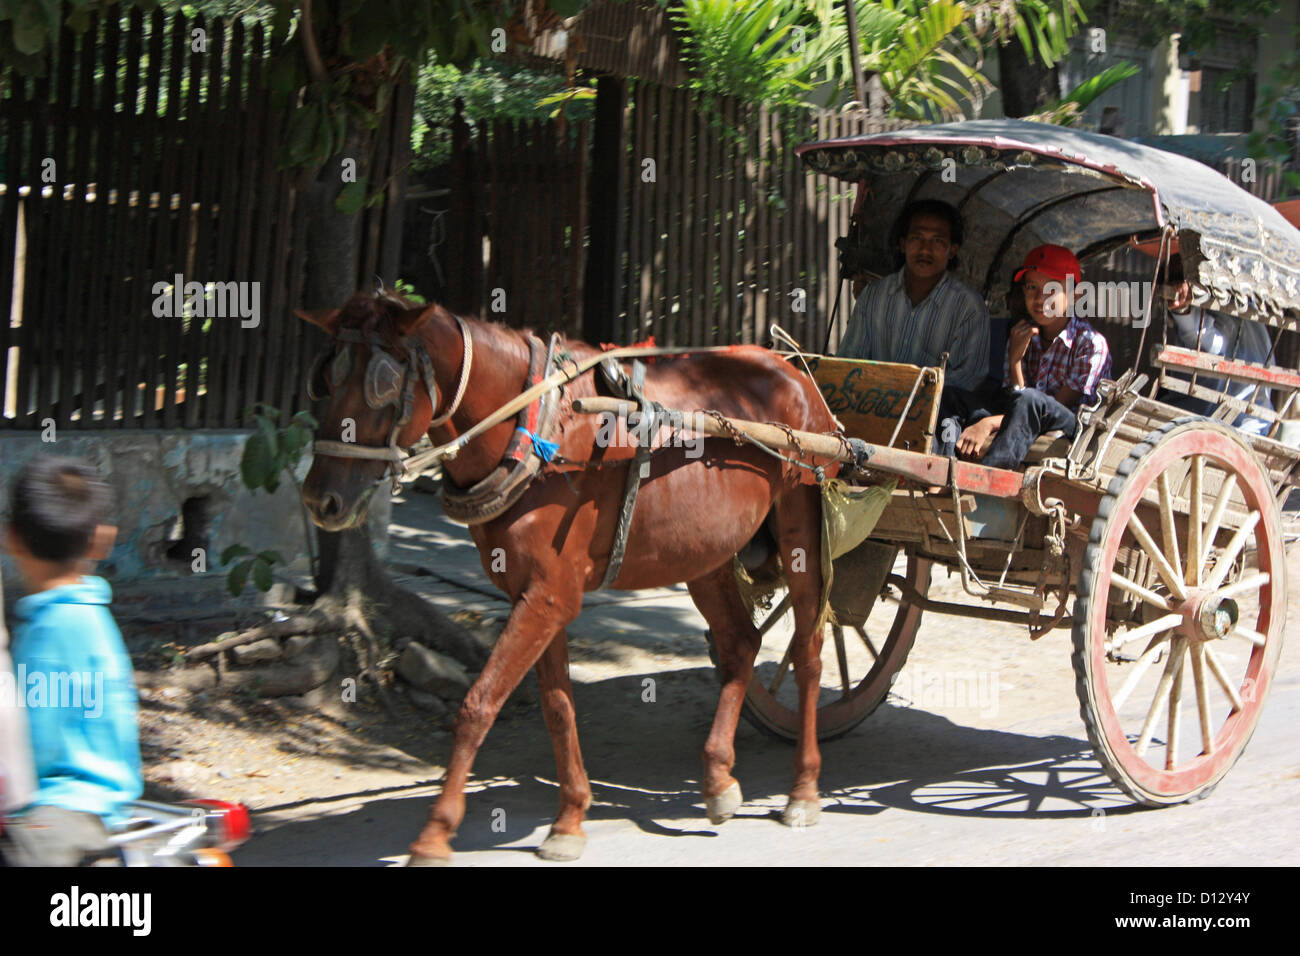 Eine Pferdekutsche ist in Mandalay (Amarapura Township), Myanmar, 25. Oktober 2012 abgebildet. Foto: Rolf Zimmermann Stockfoto